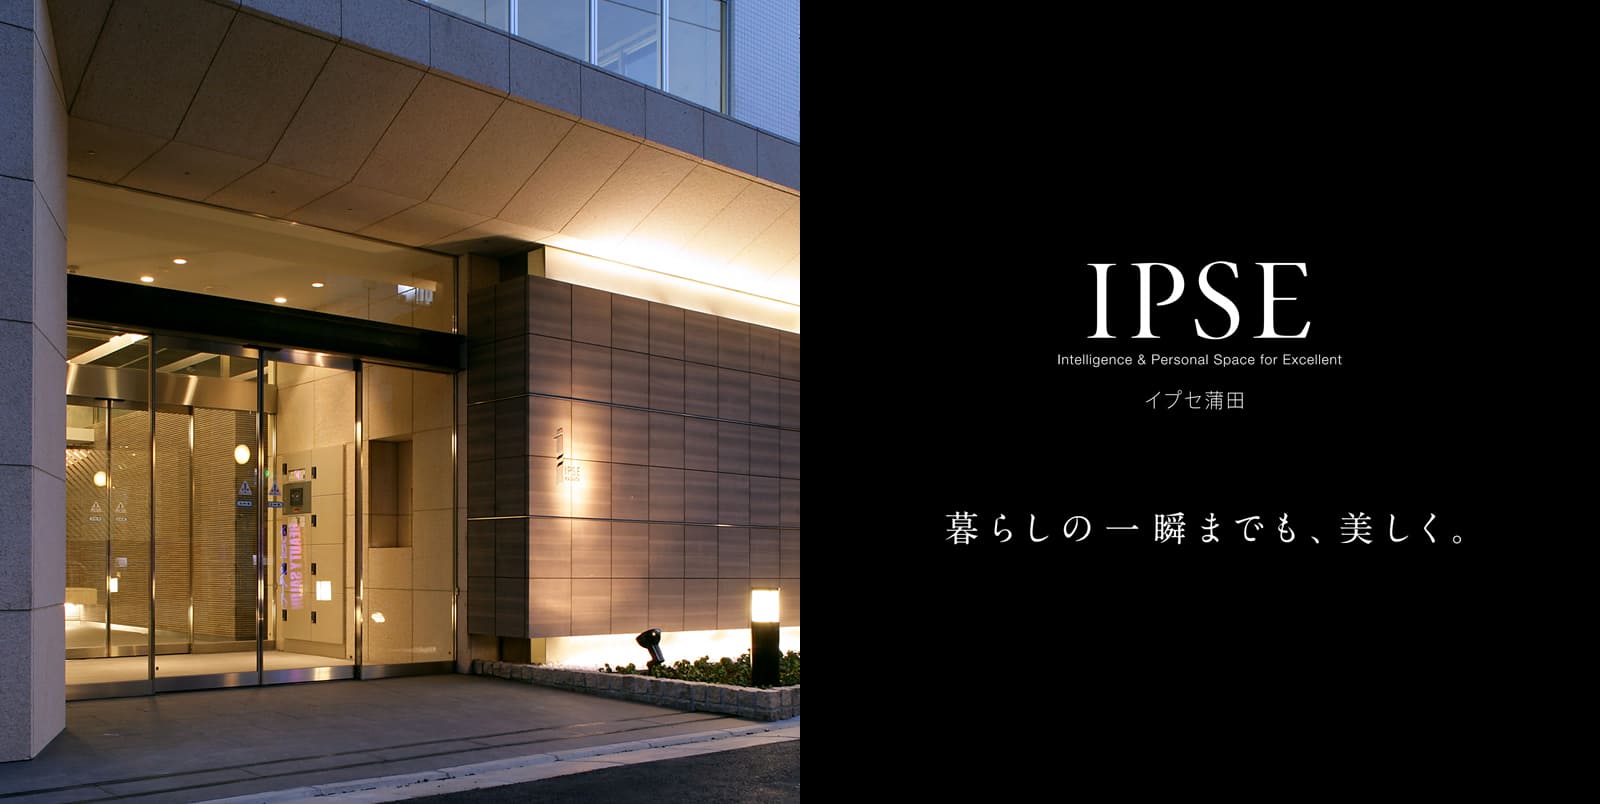 イプセ蒲田 IPSE Intelligence & Personal Space for Excellent 暮らしの一瞬までも、美しく